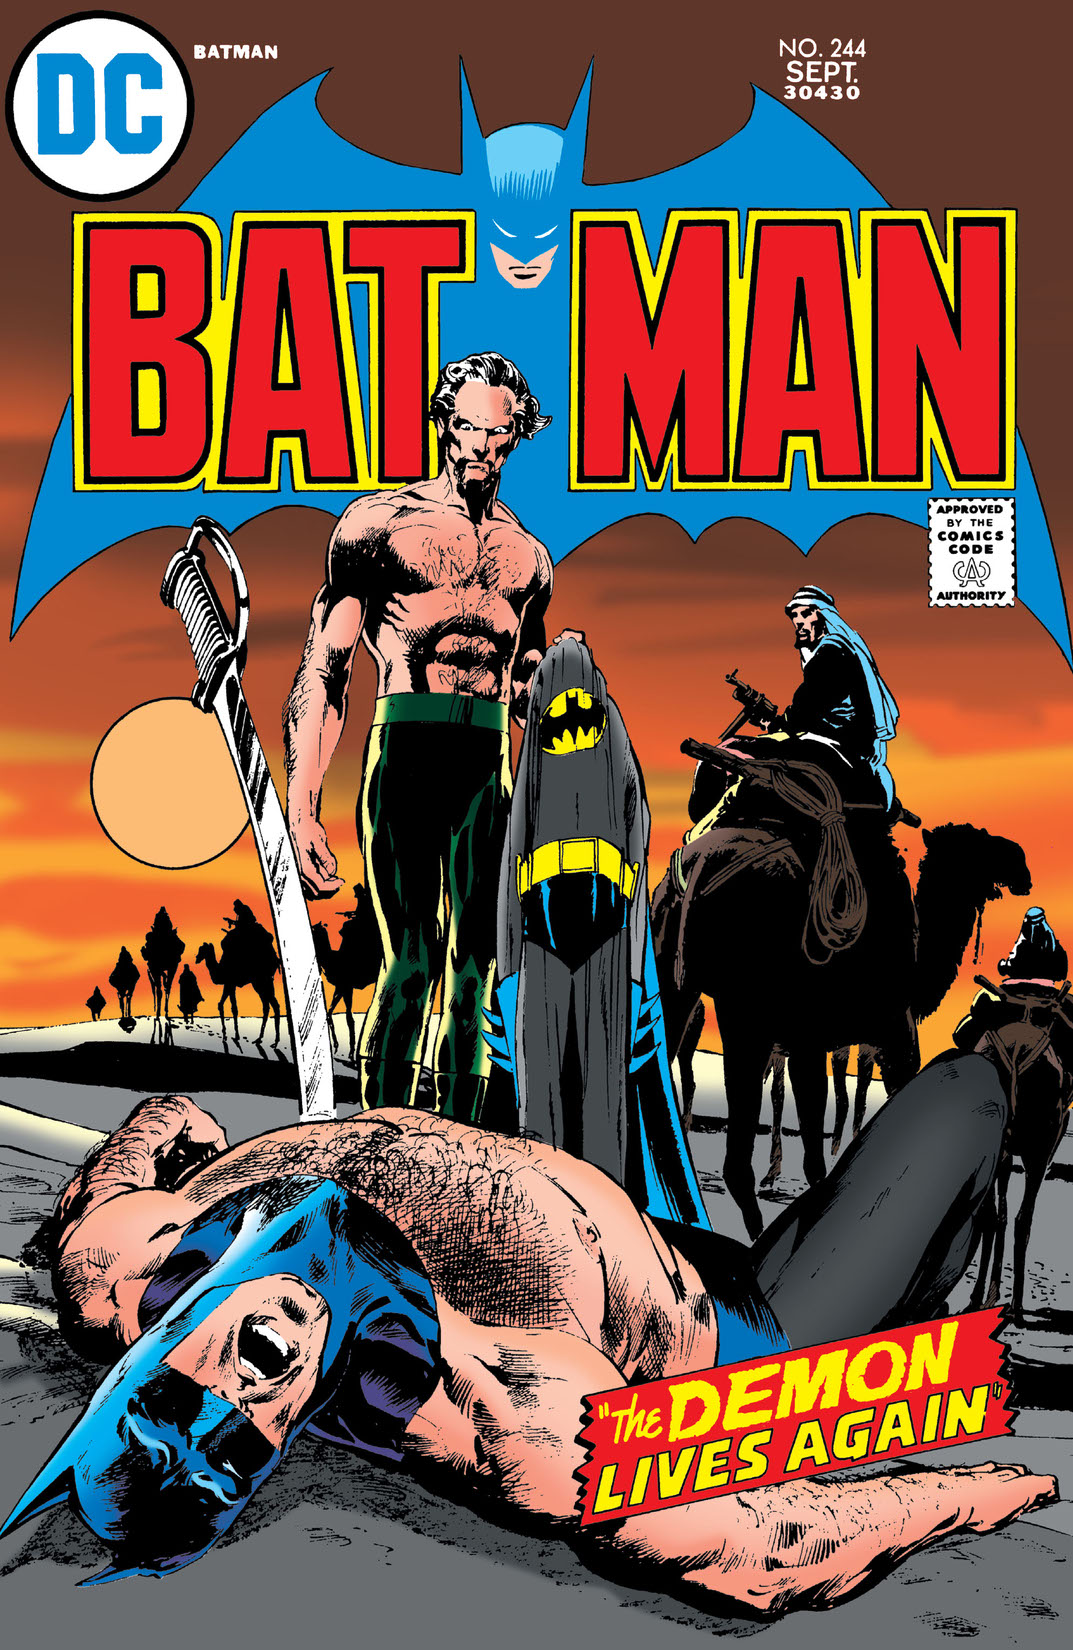 Batman (1940-) #244 preview images